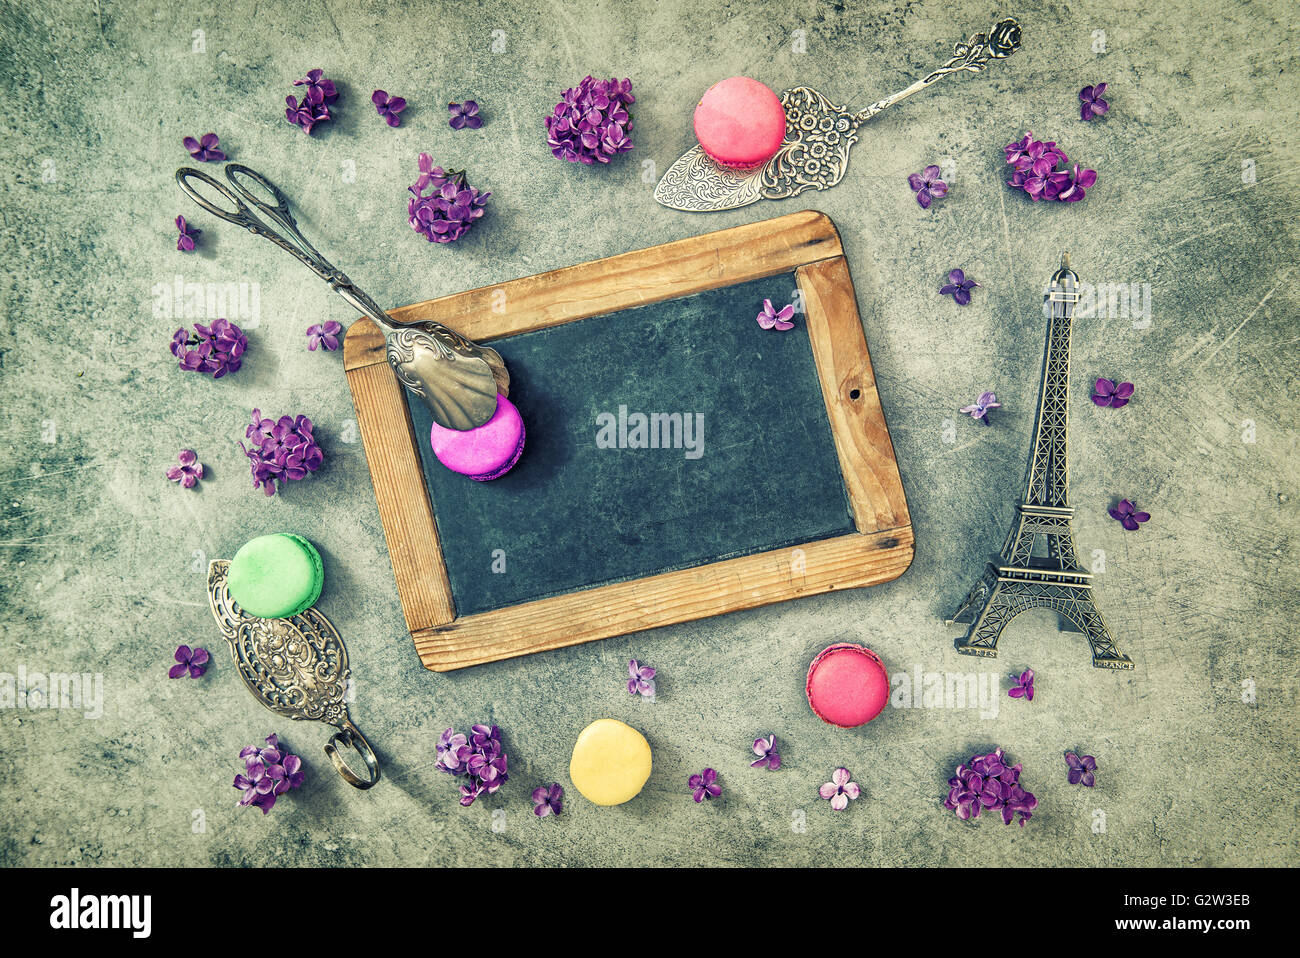 Antique chalkboard, macarons, Eiffel tower Paris souvenir. Vintage style toned picture Stock Photo